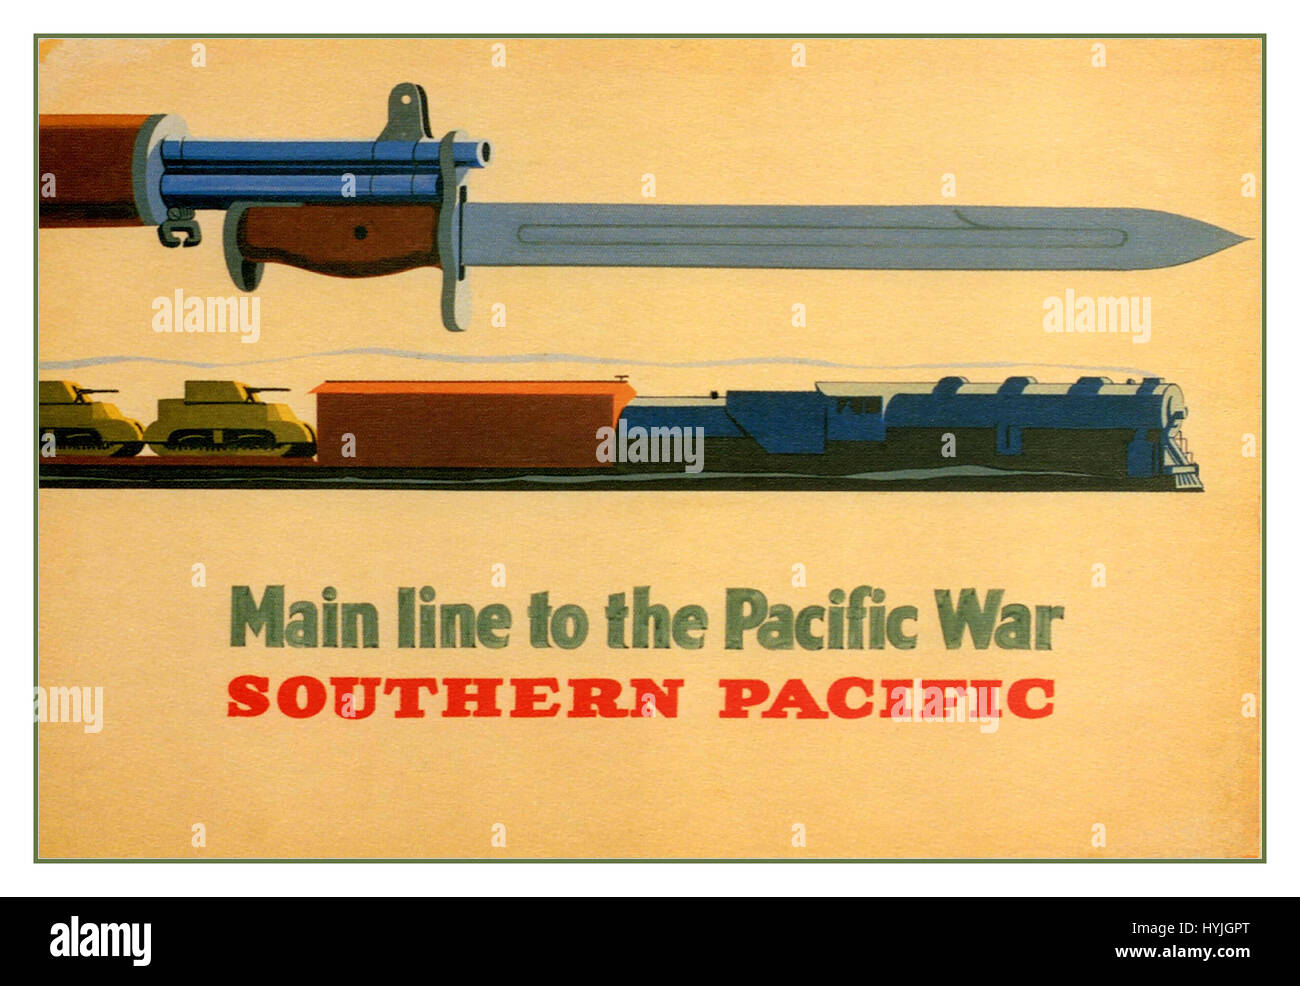 Une histoire de la guerre et de la bravoure dépeints dans ce fameux "axe de la guerre du Pacifique par le Pacifique Sud" voyage affiche créée par George et Lerner Lyman le pouvoir en 1943. Banque D'Images